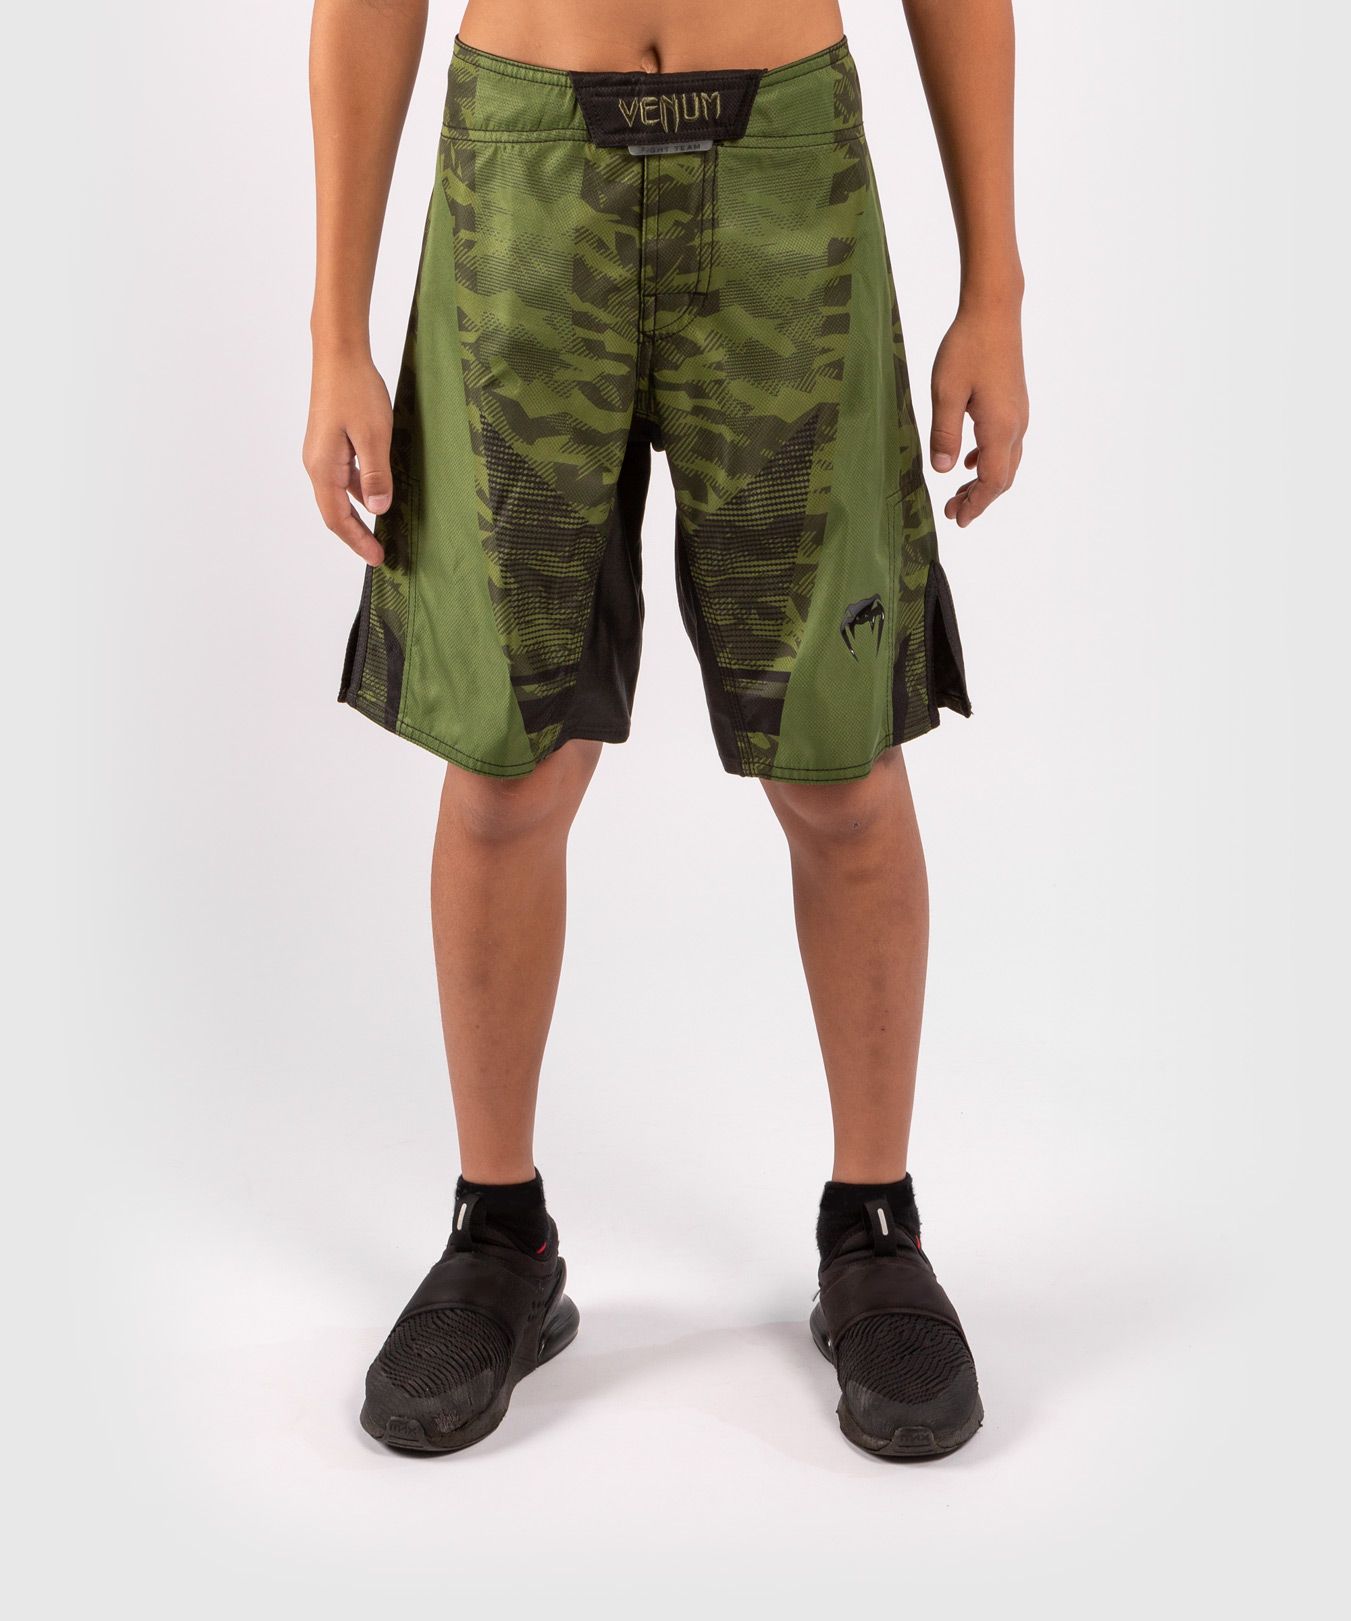 Pantalón corto de lucha Venum Trooper para niños - Camo Bosque/Negro